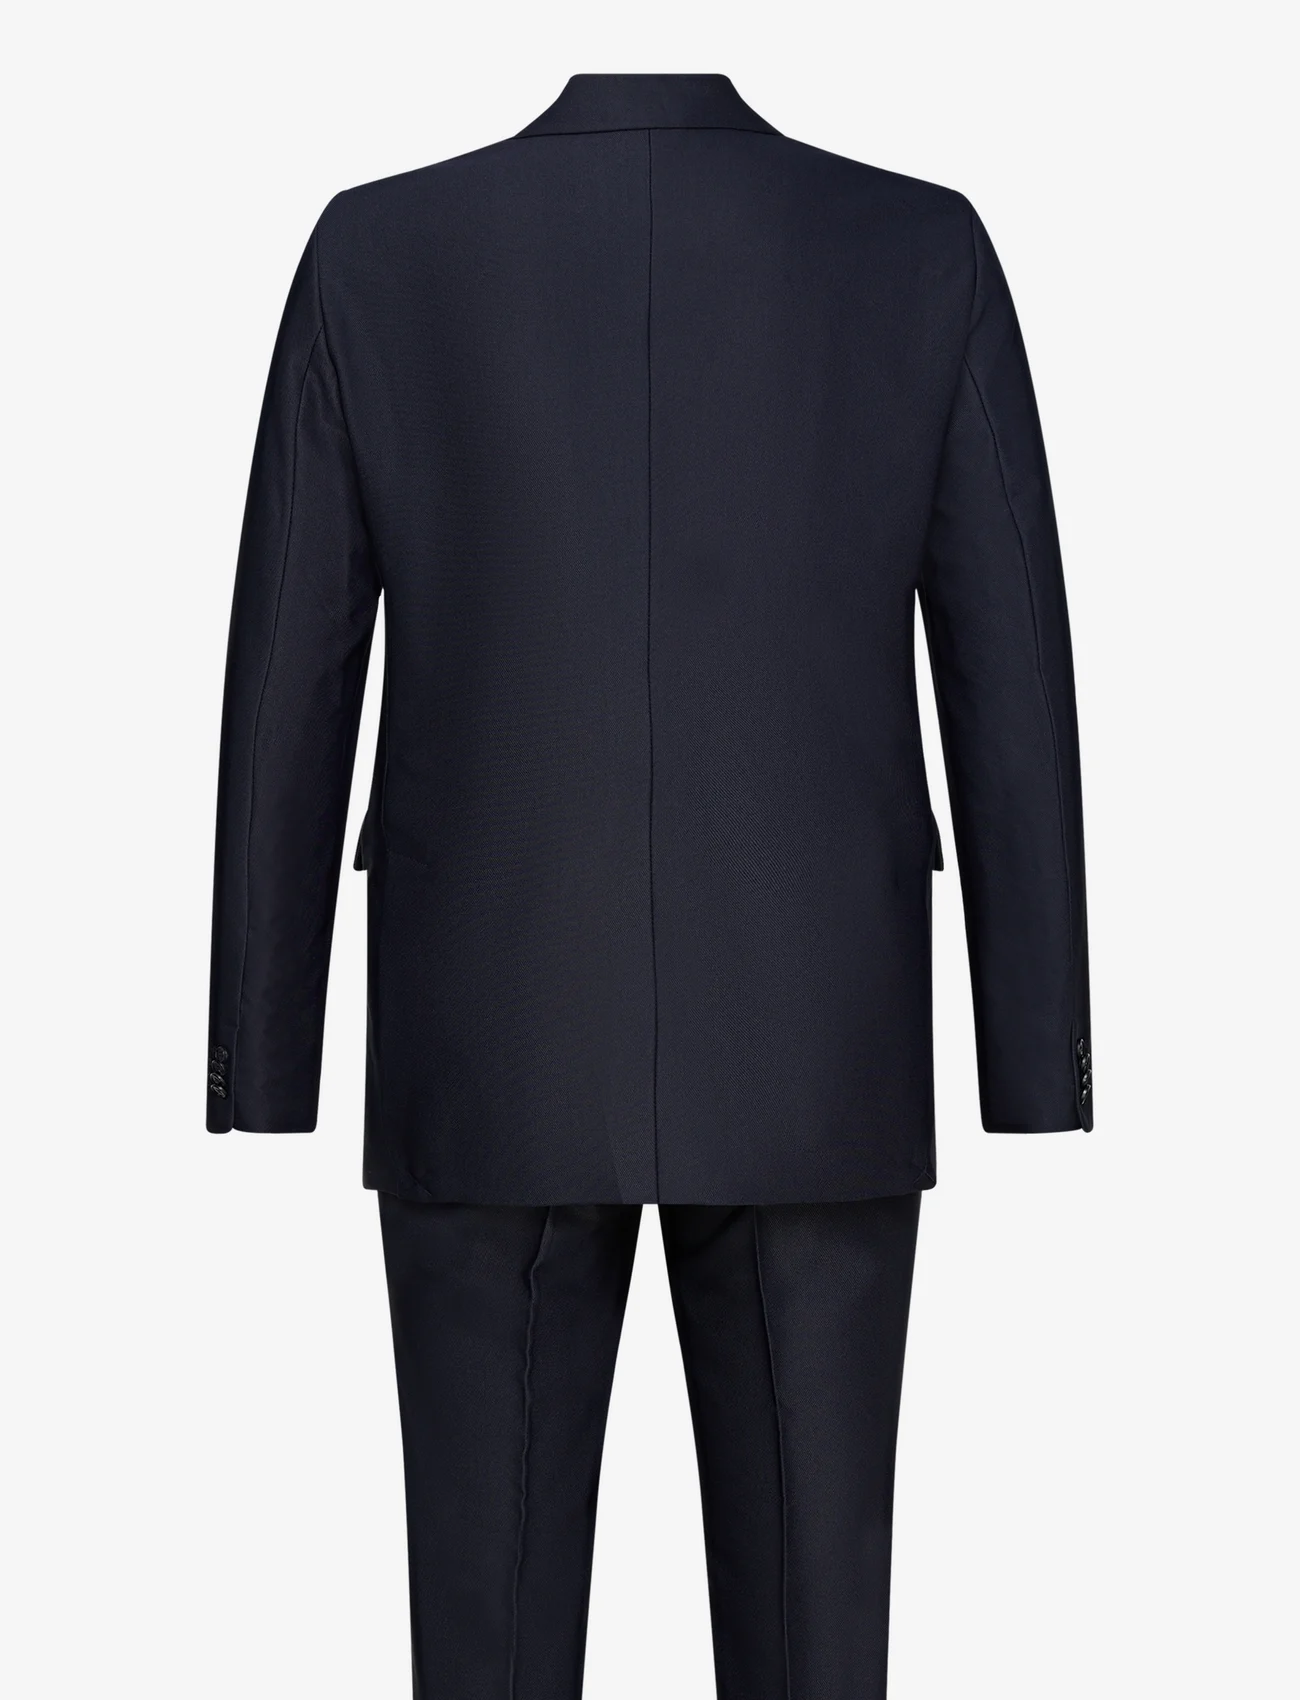 Bruuns Bazaar - WeftBBFrancoAxel suit - kahe rinnatisega ülikonnad - navy - 1